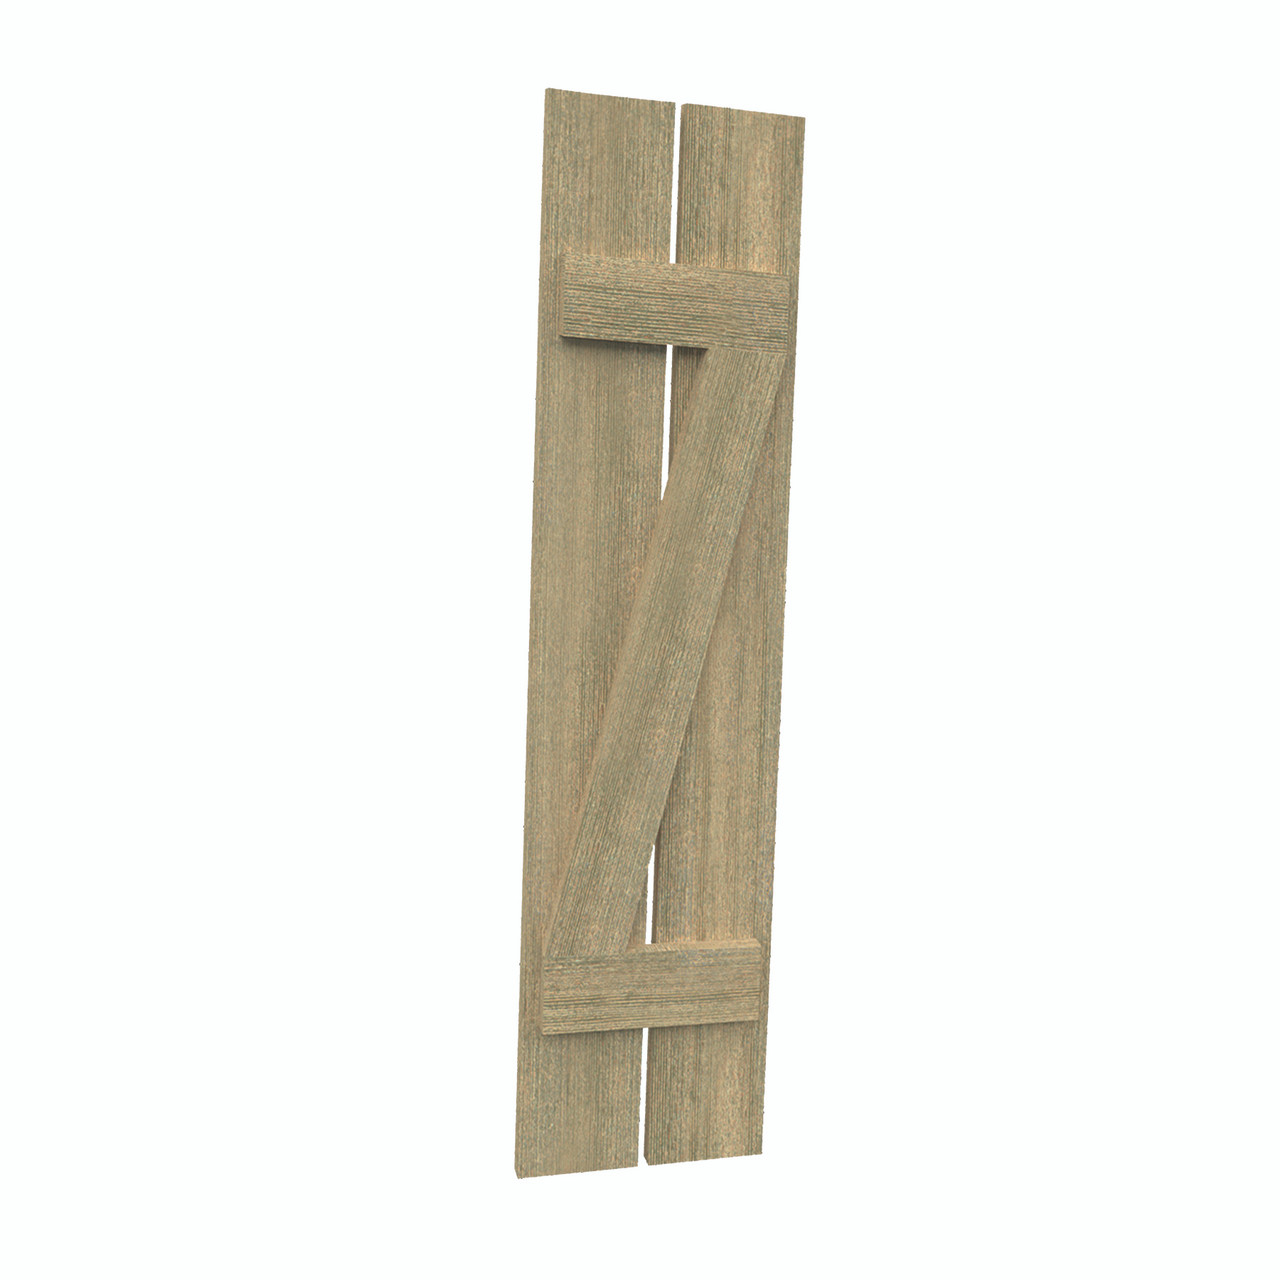 12 inch by 84 inch Plank Shutter with 2-Plank, Z-Batten